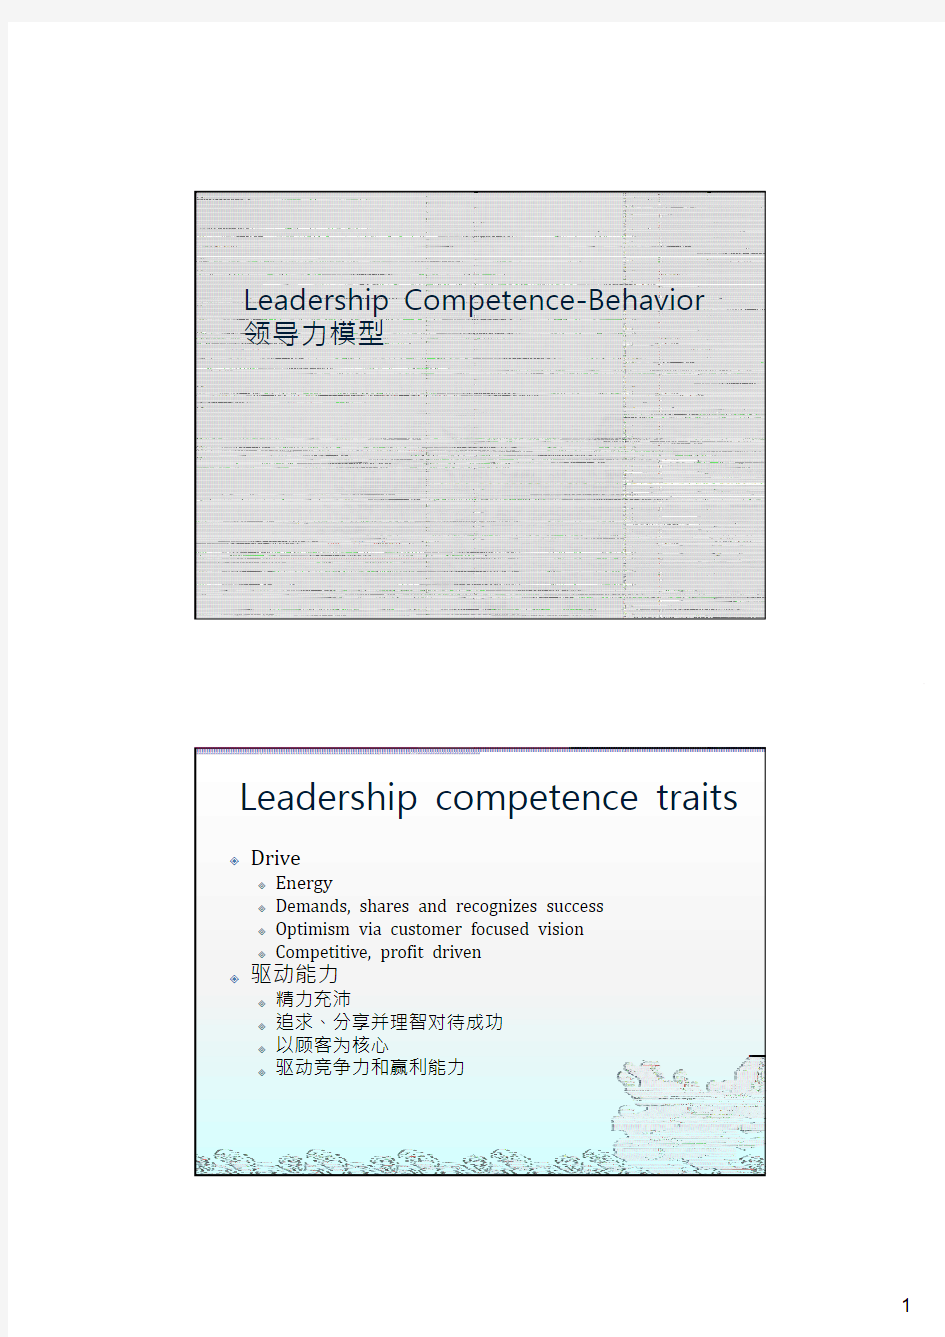 提高领导力 Leadership Competence